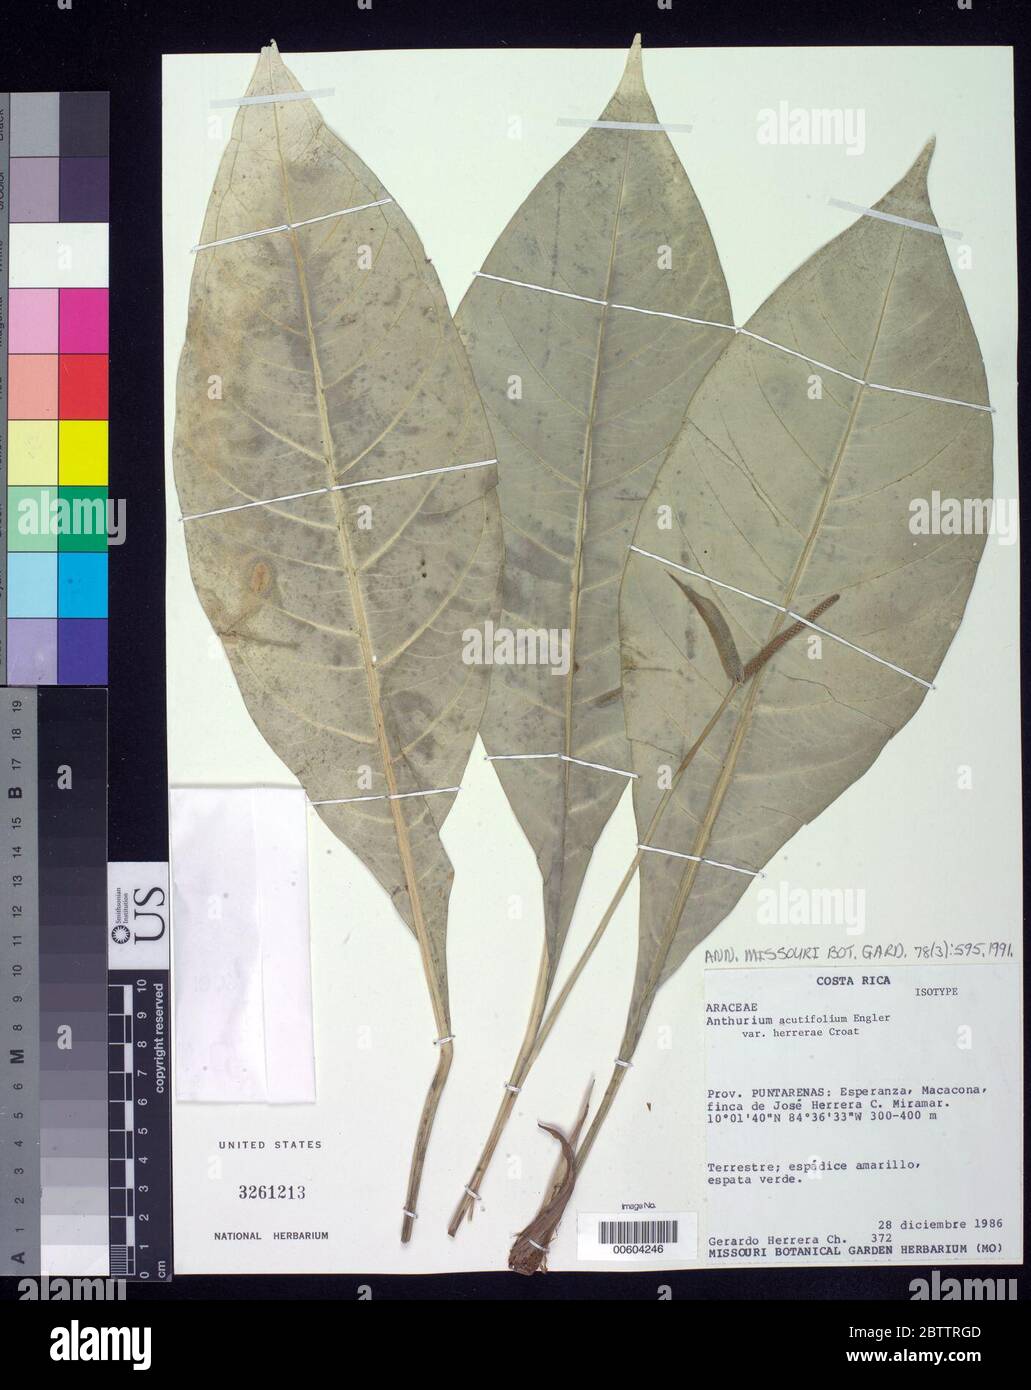 Anthurium acutifolium var herrerae Croat. Stock Photo